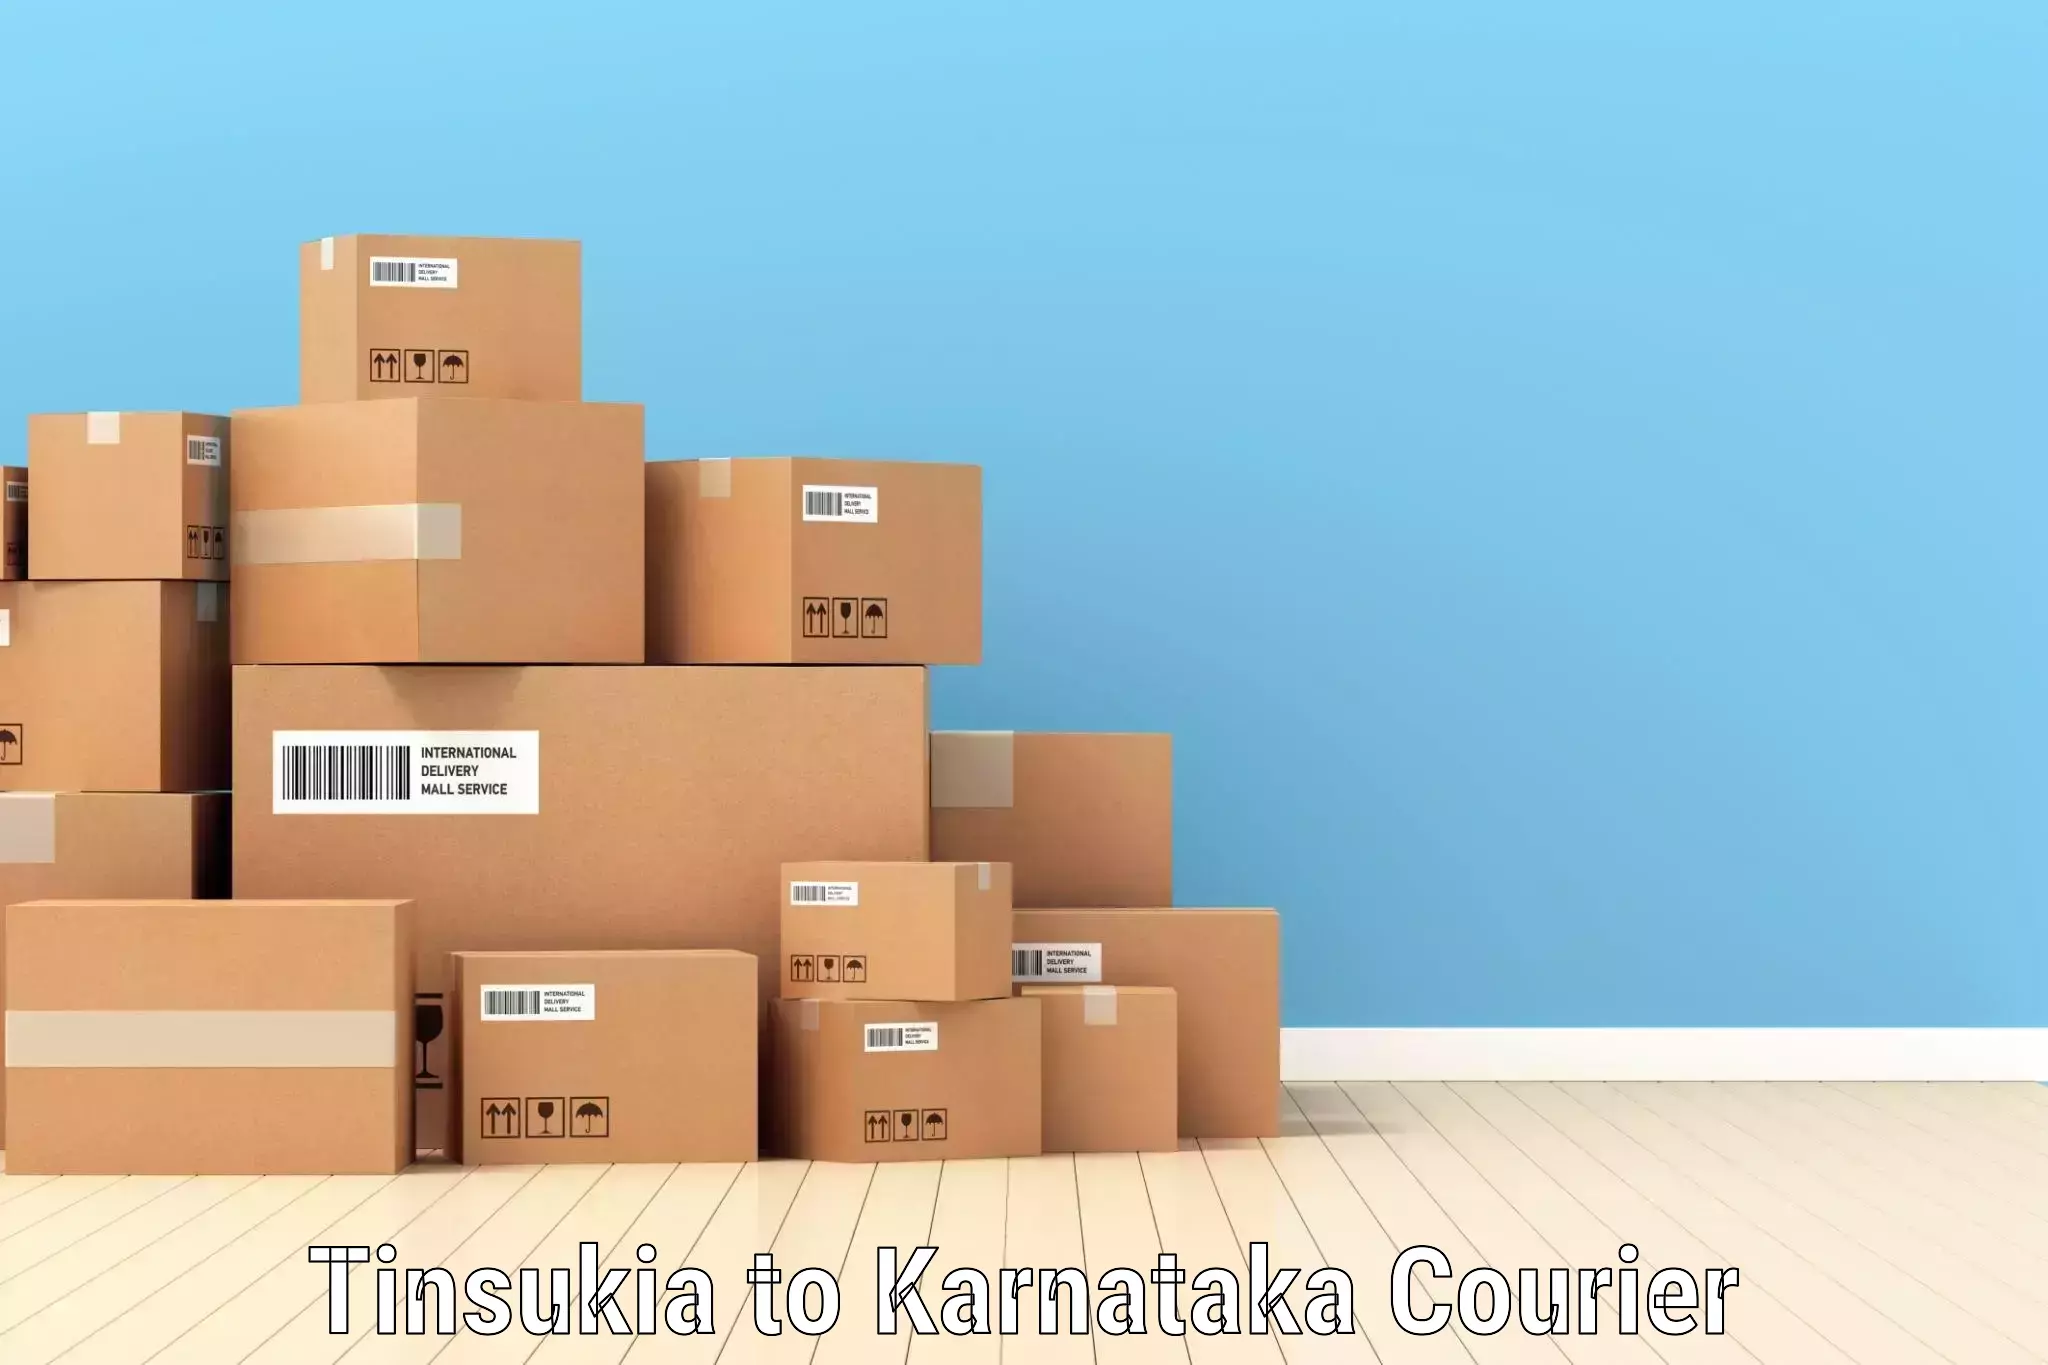 Subscription-based courier Tinsukia to Yelburga